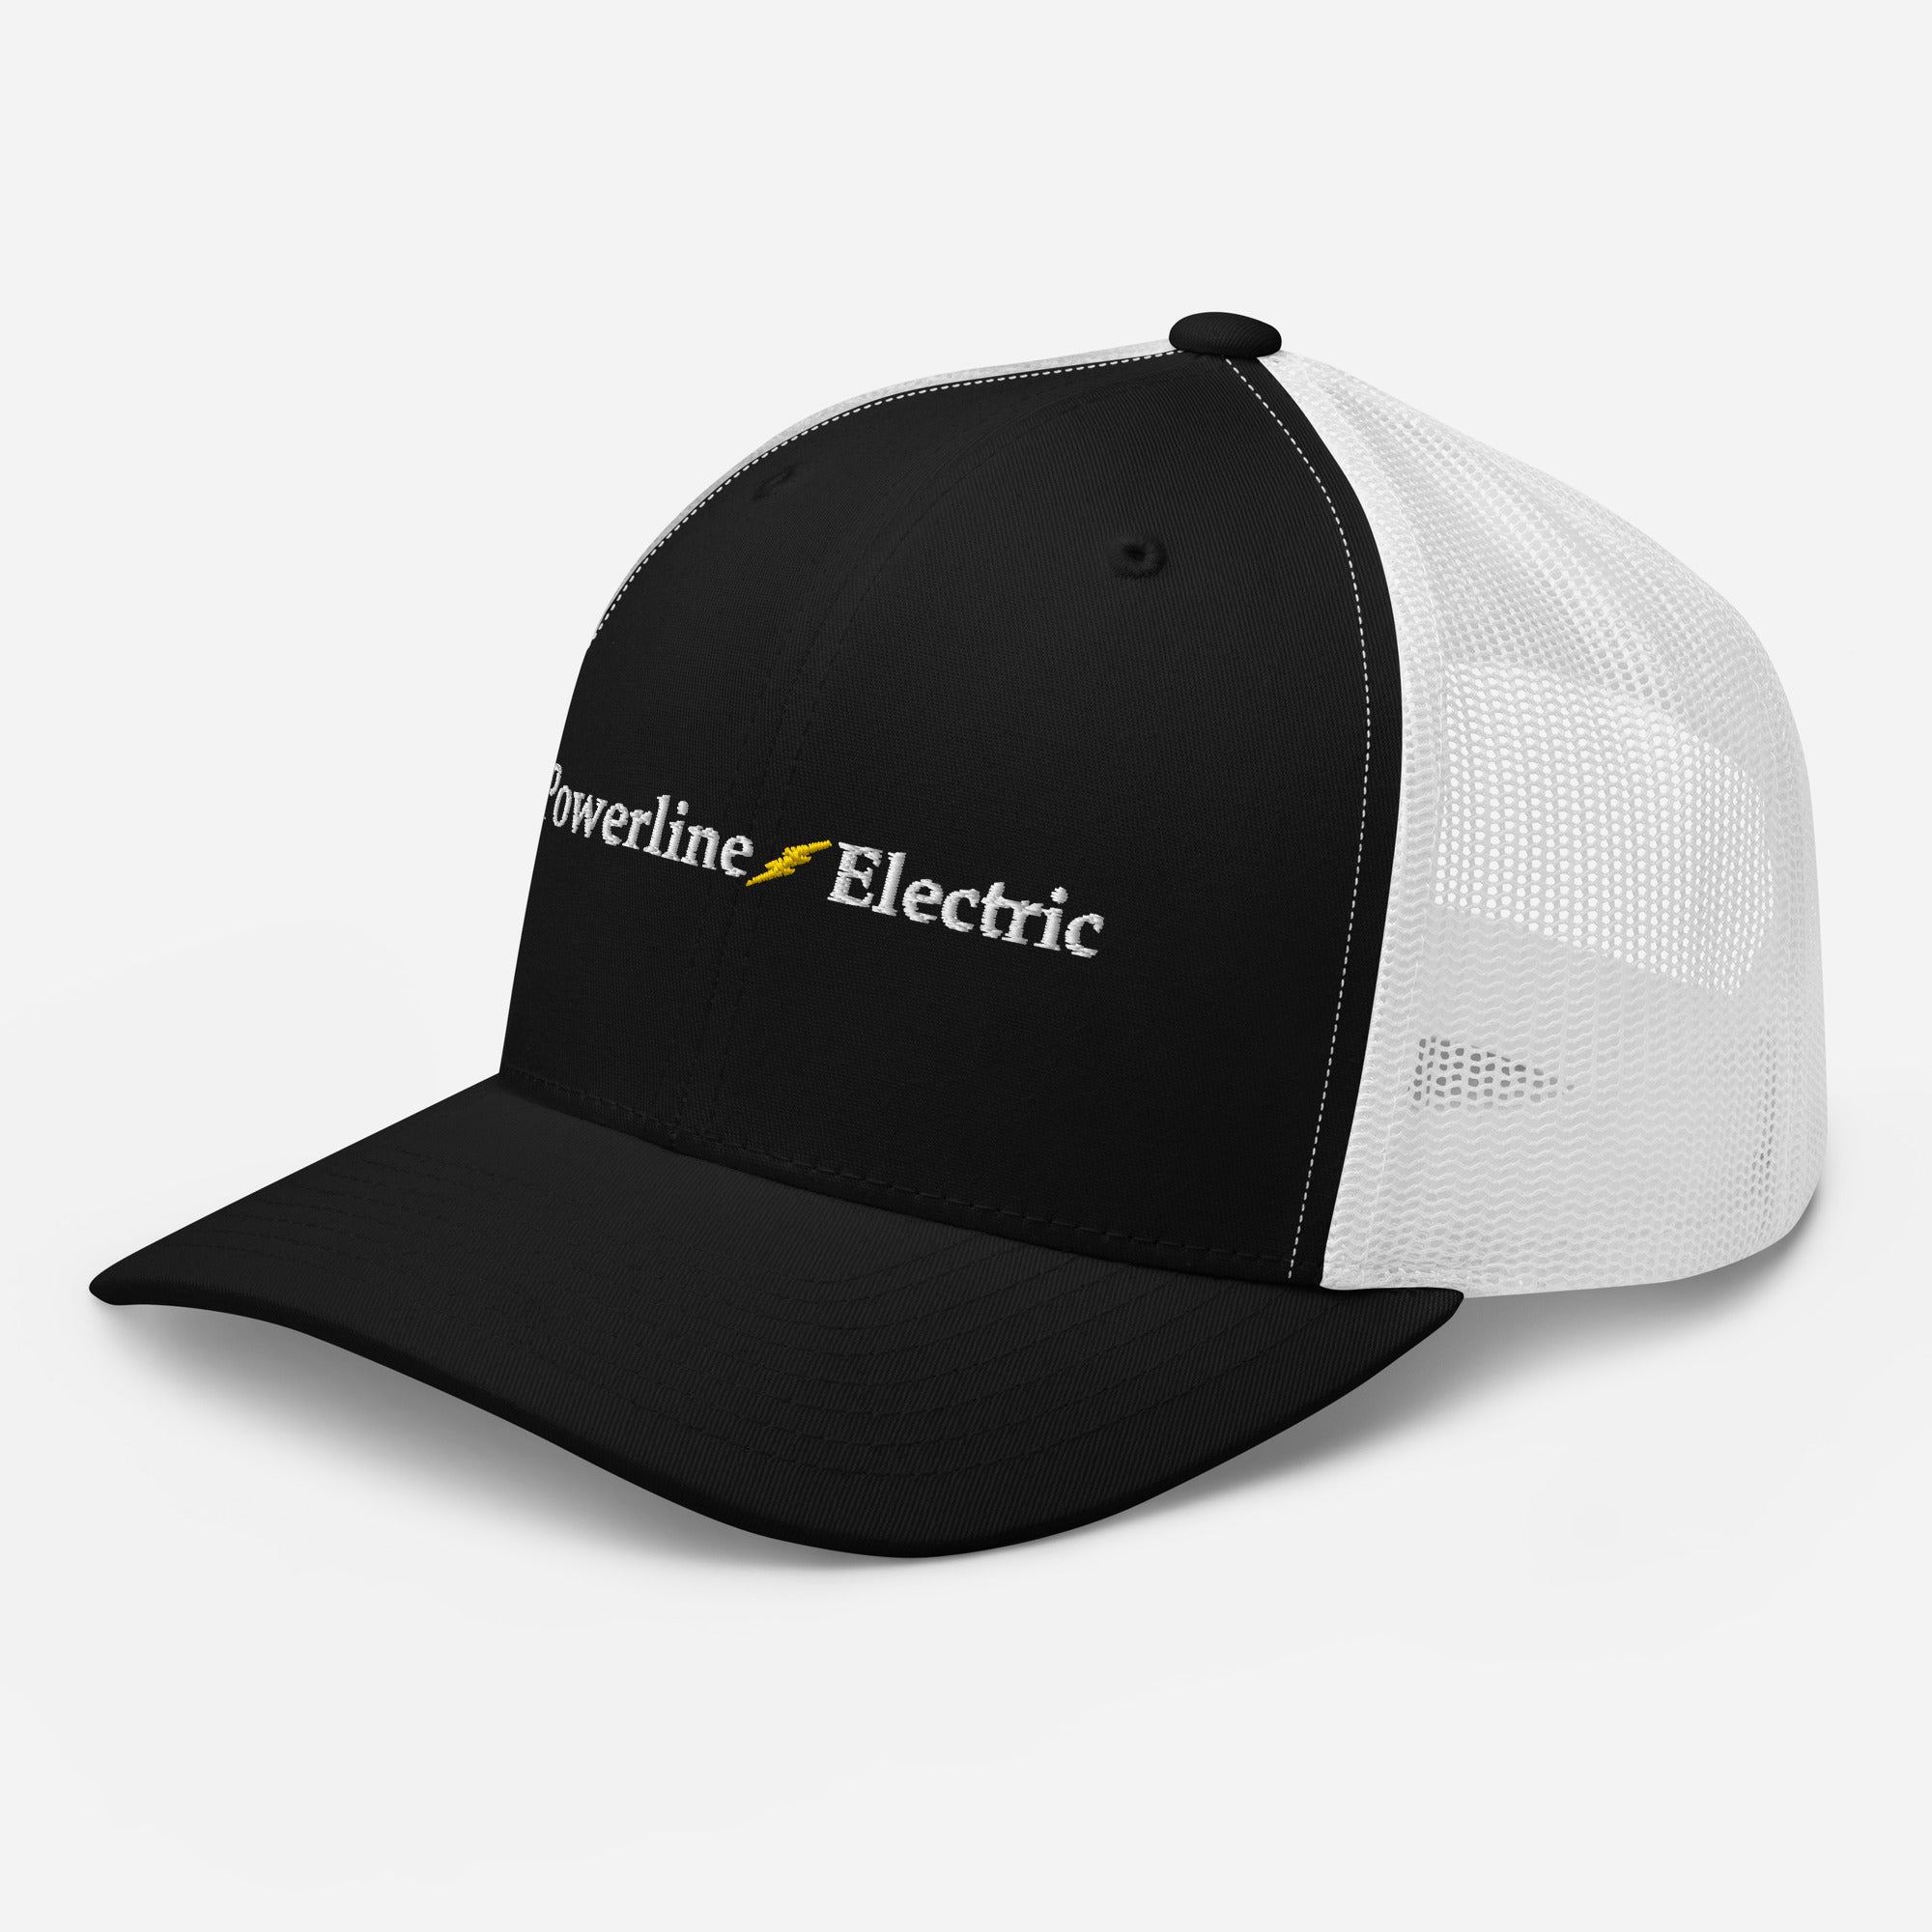 Powerline Electric | Trucker Cap